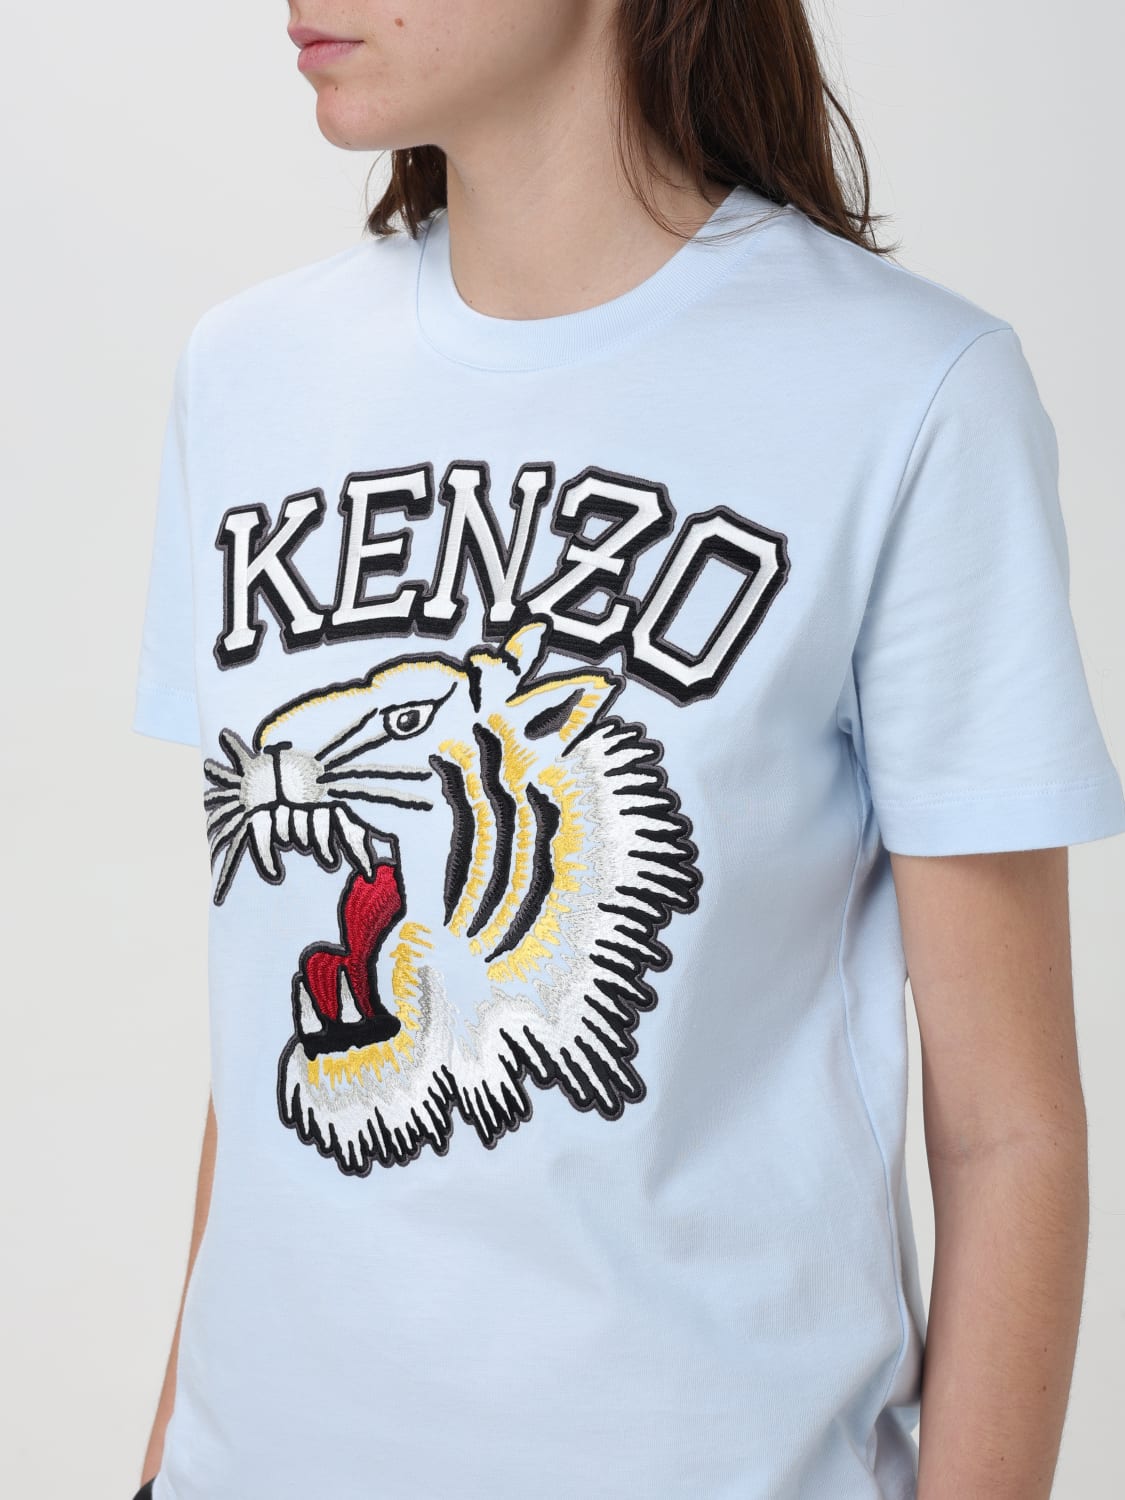 KENZO Tシャツ Lサイズ FB55TS0654SL ケンゾー 価格 改定 値下げ